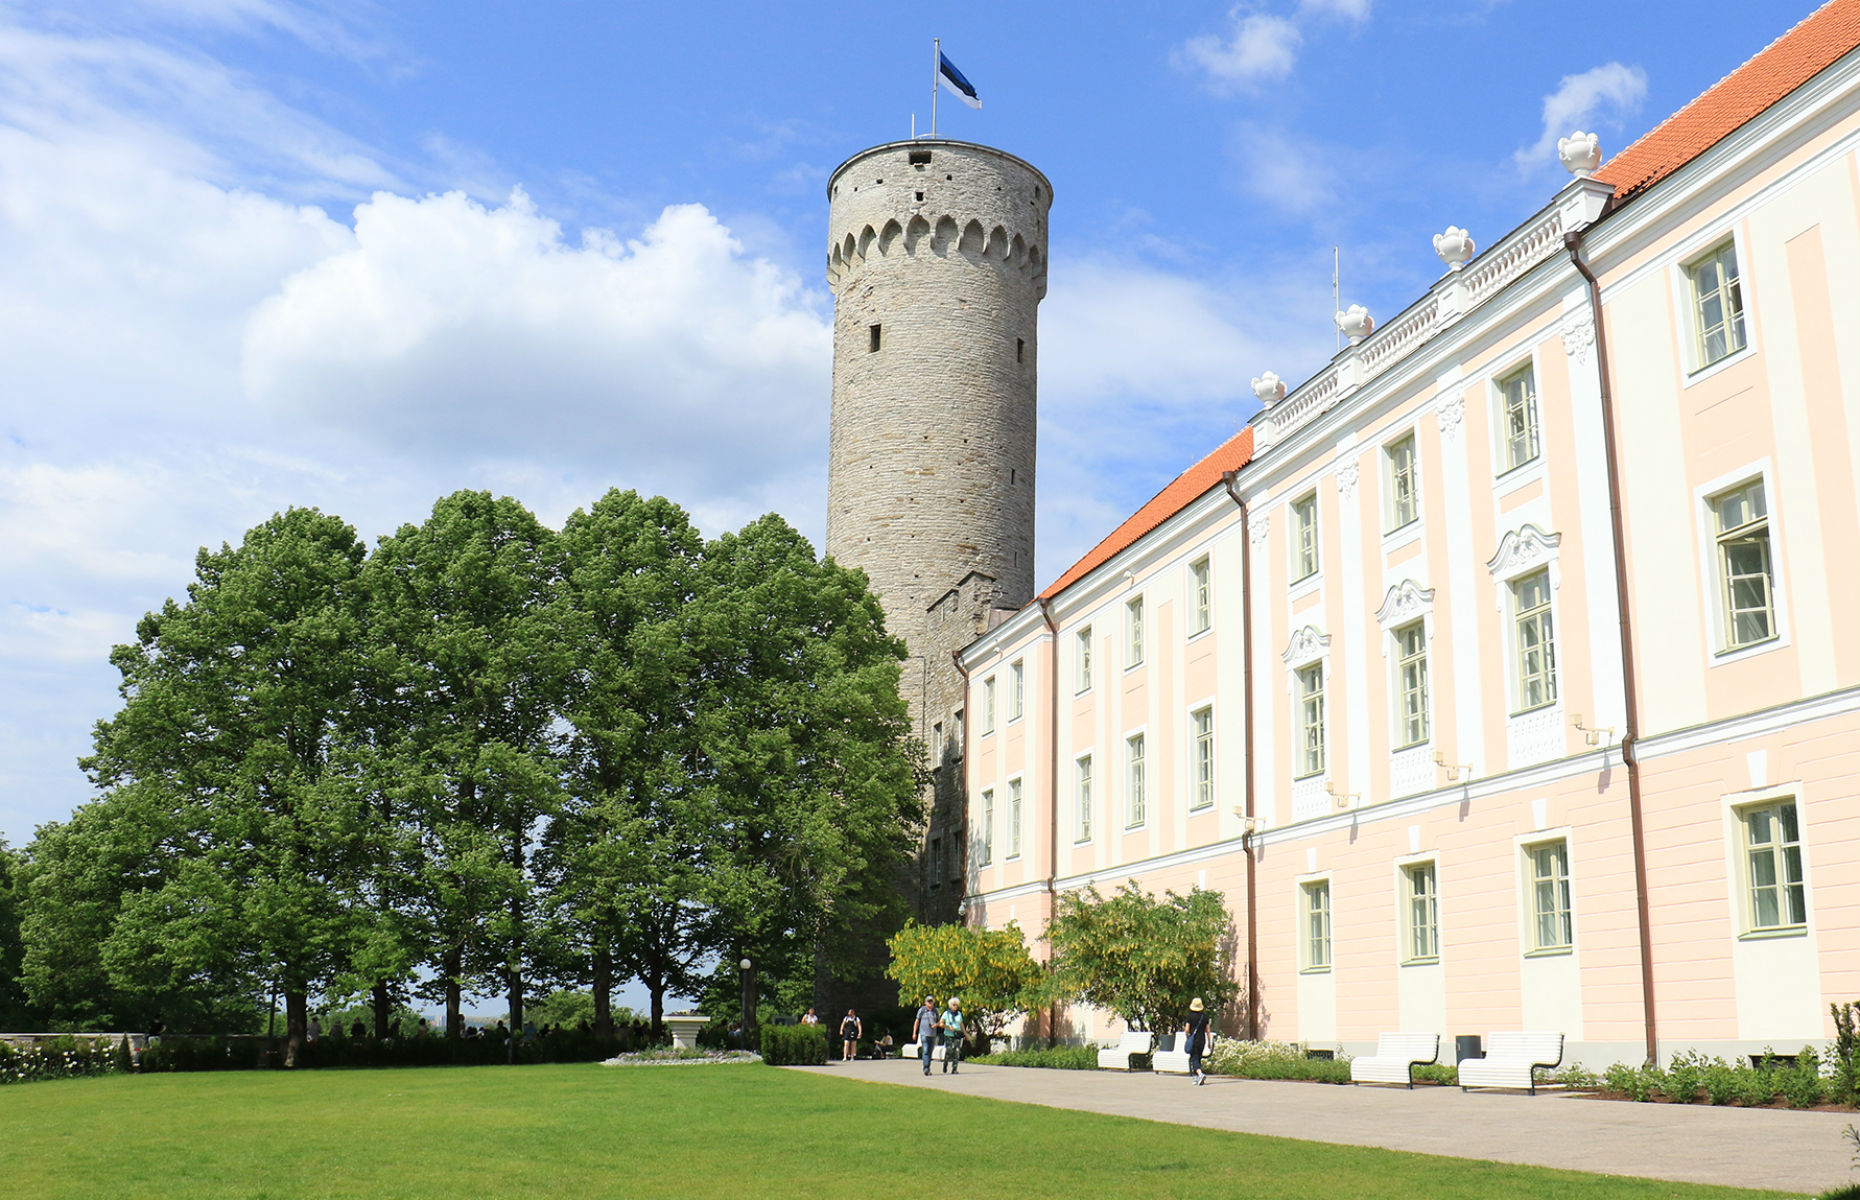 Castle showing tricolour flag